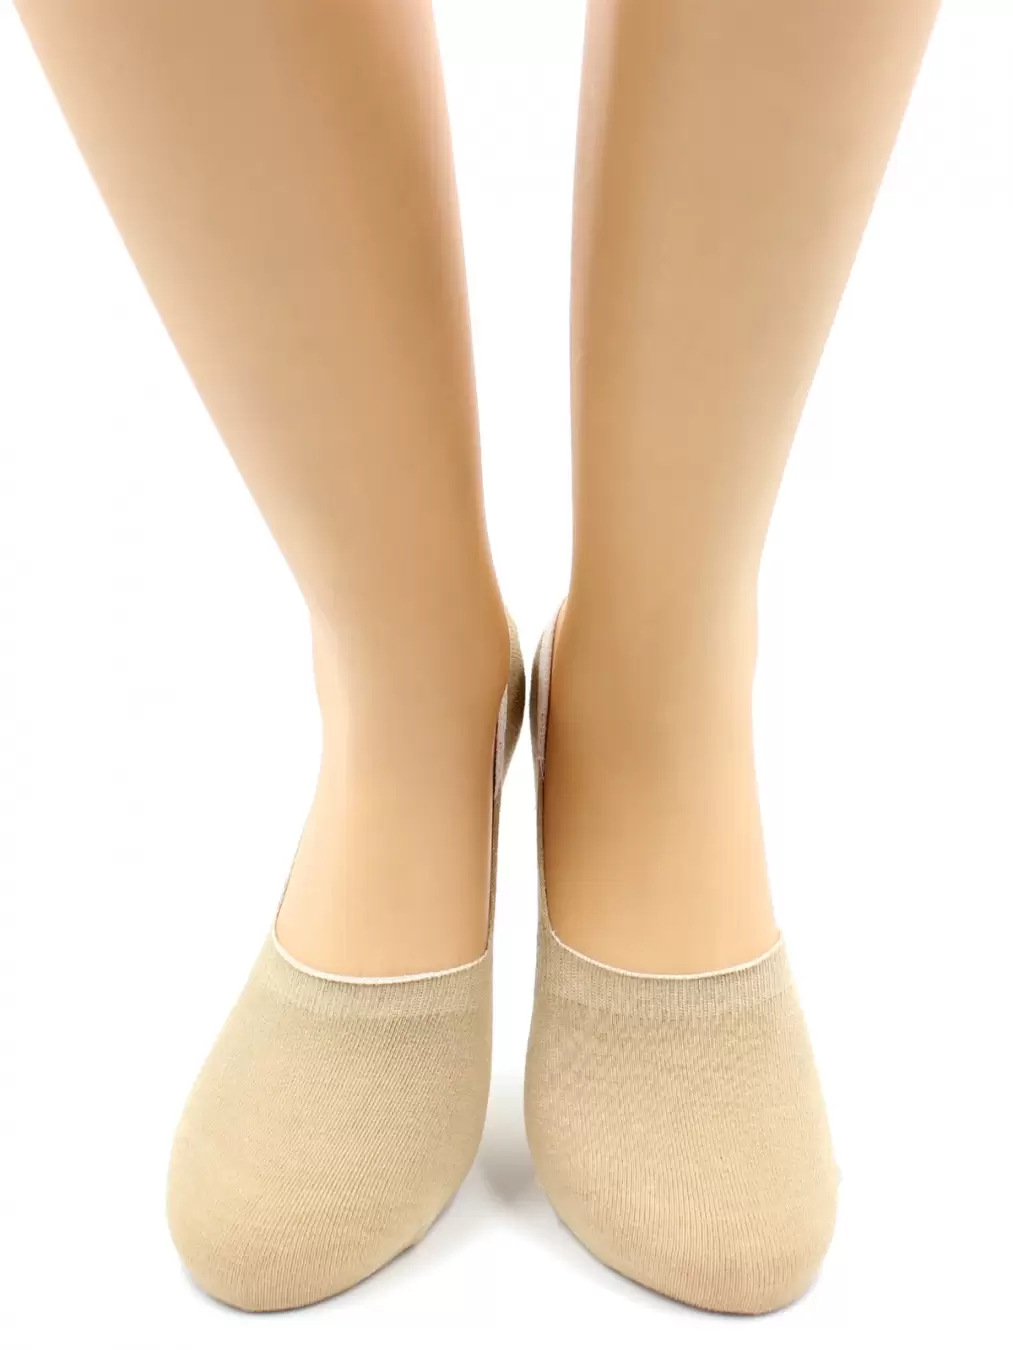 Hobby Line ННЖ, носки женские невидимые (изображение 1)